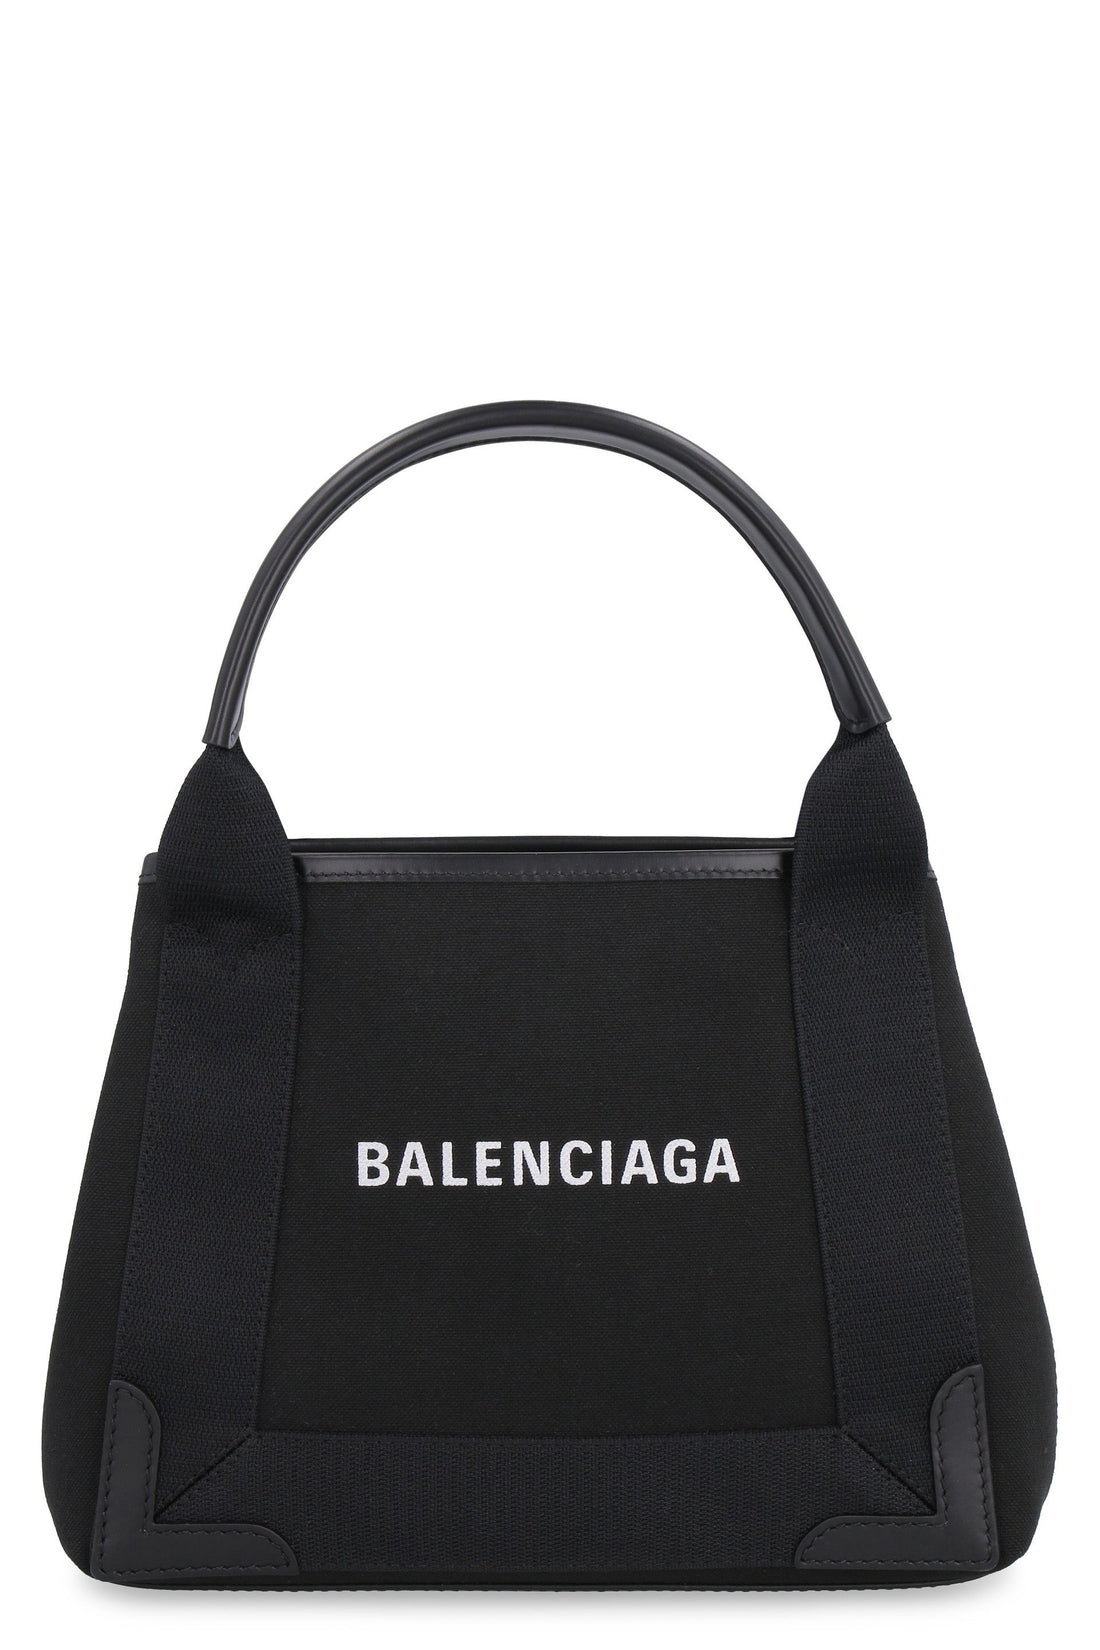 Balenciaga-OUTLET-SALE-Cabas XS canvas tote bag-ARCHIVIST